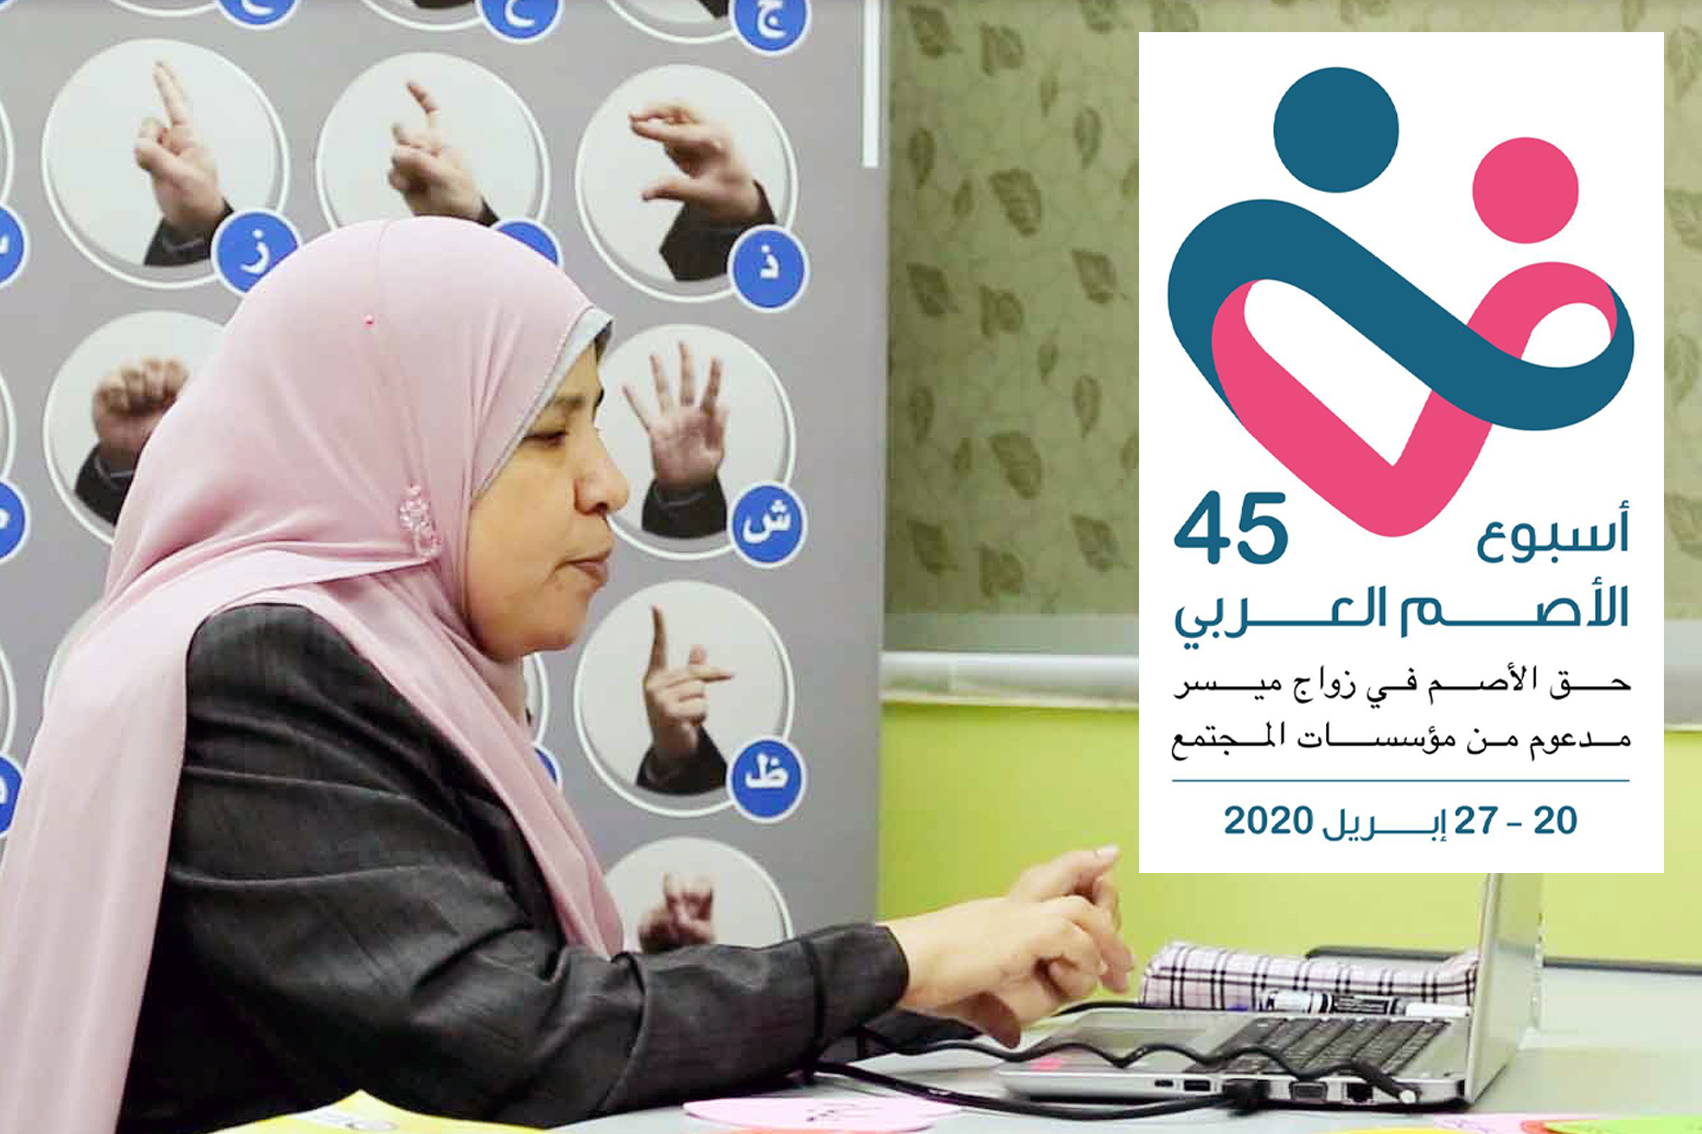 مدرسة الأمل للصم تحتفل بأسبوع الأصم العربي الخامس والأربعين